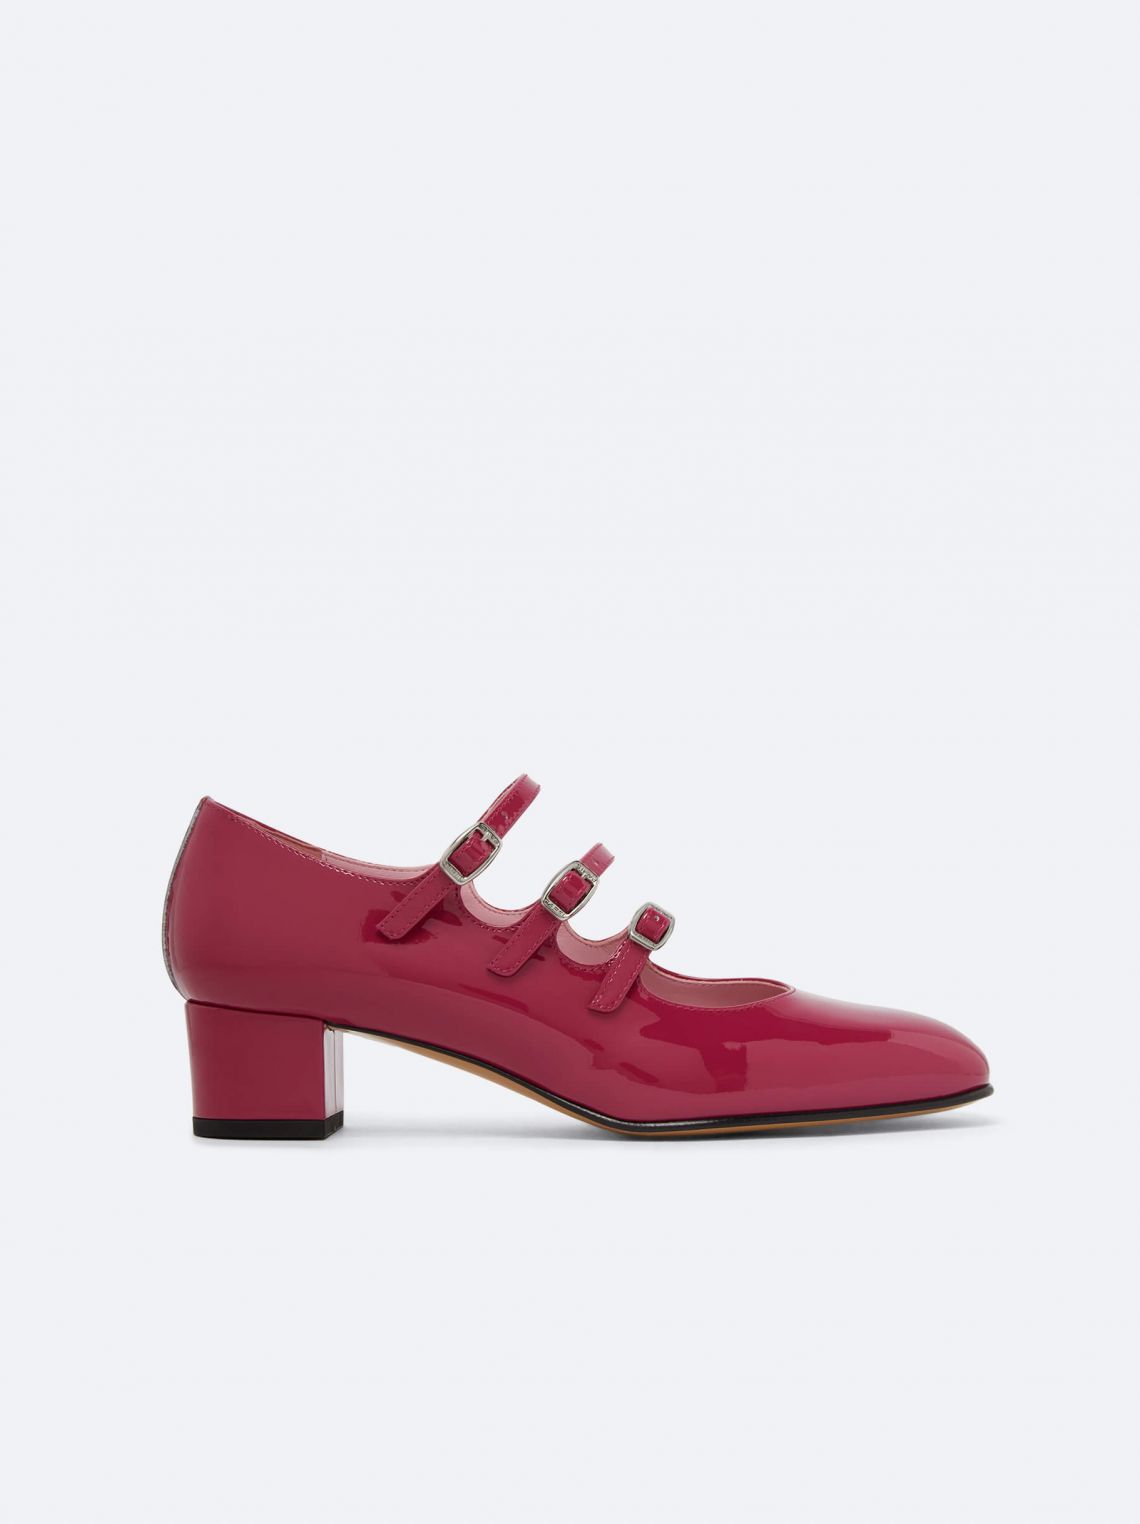 New collection - Shoes for Women | Carel Paris (3)